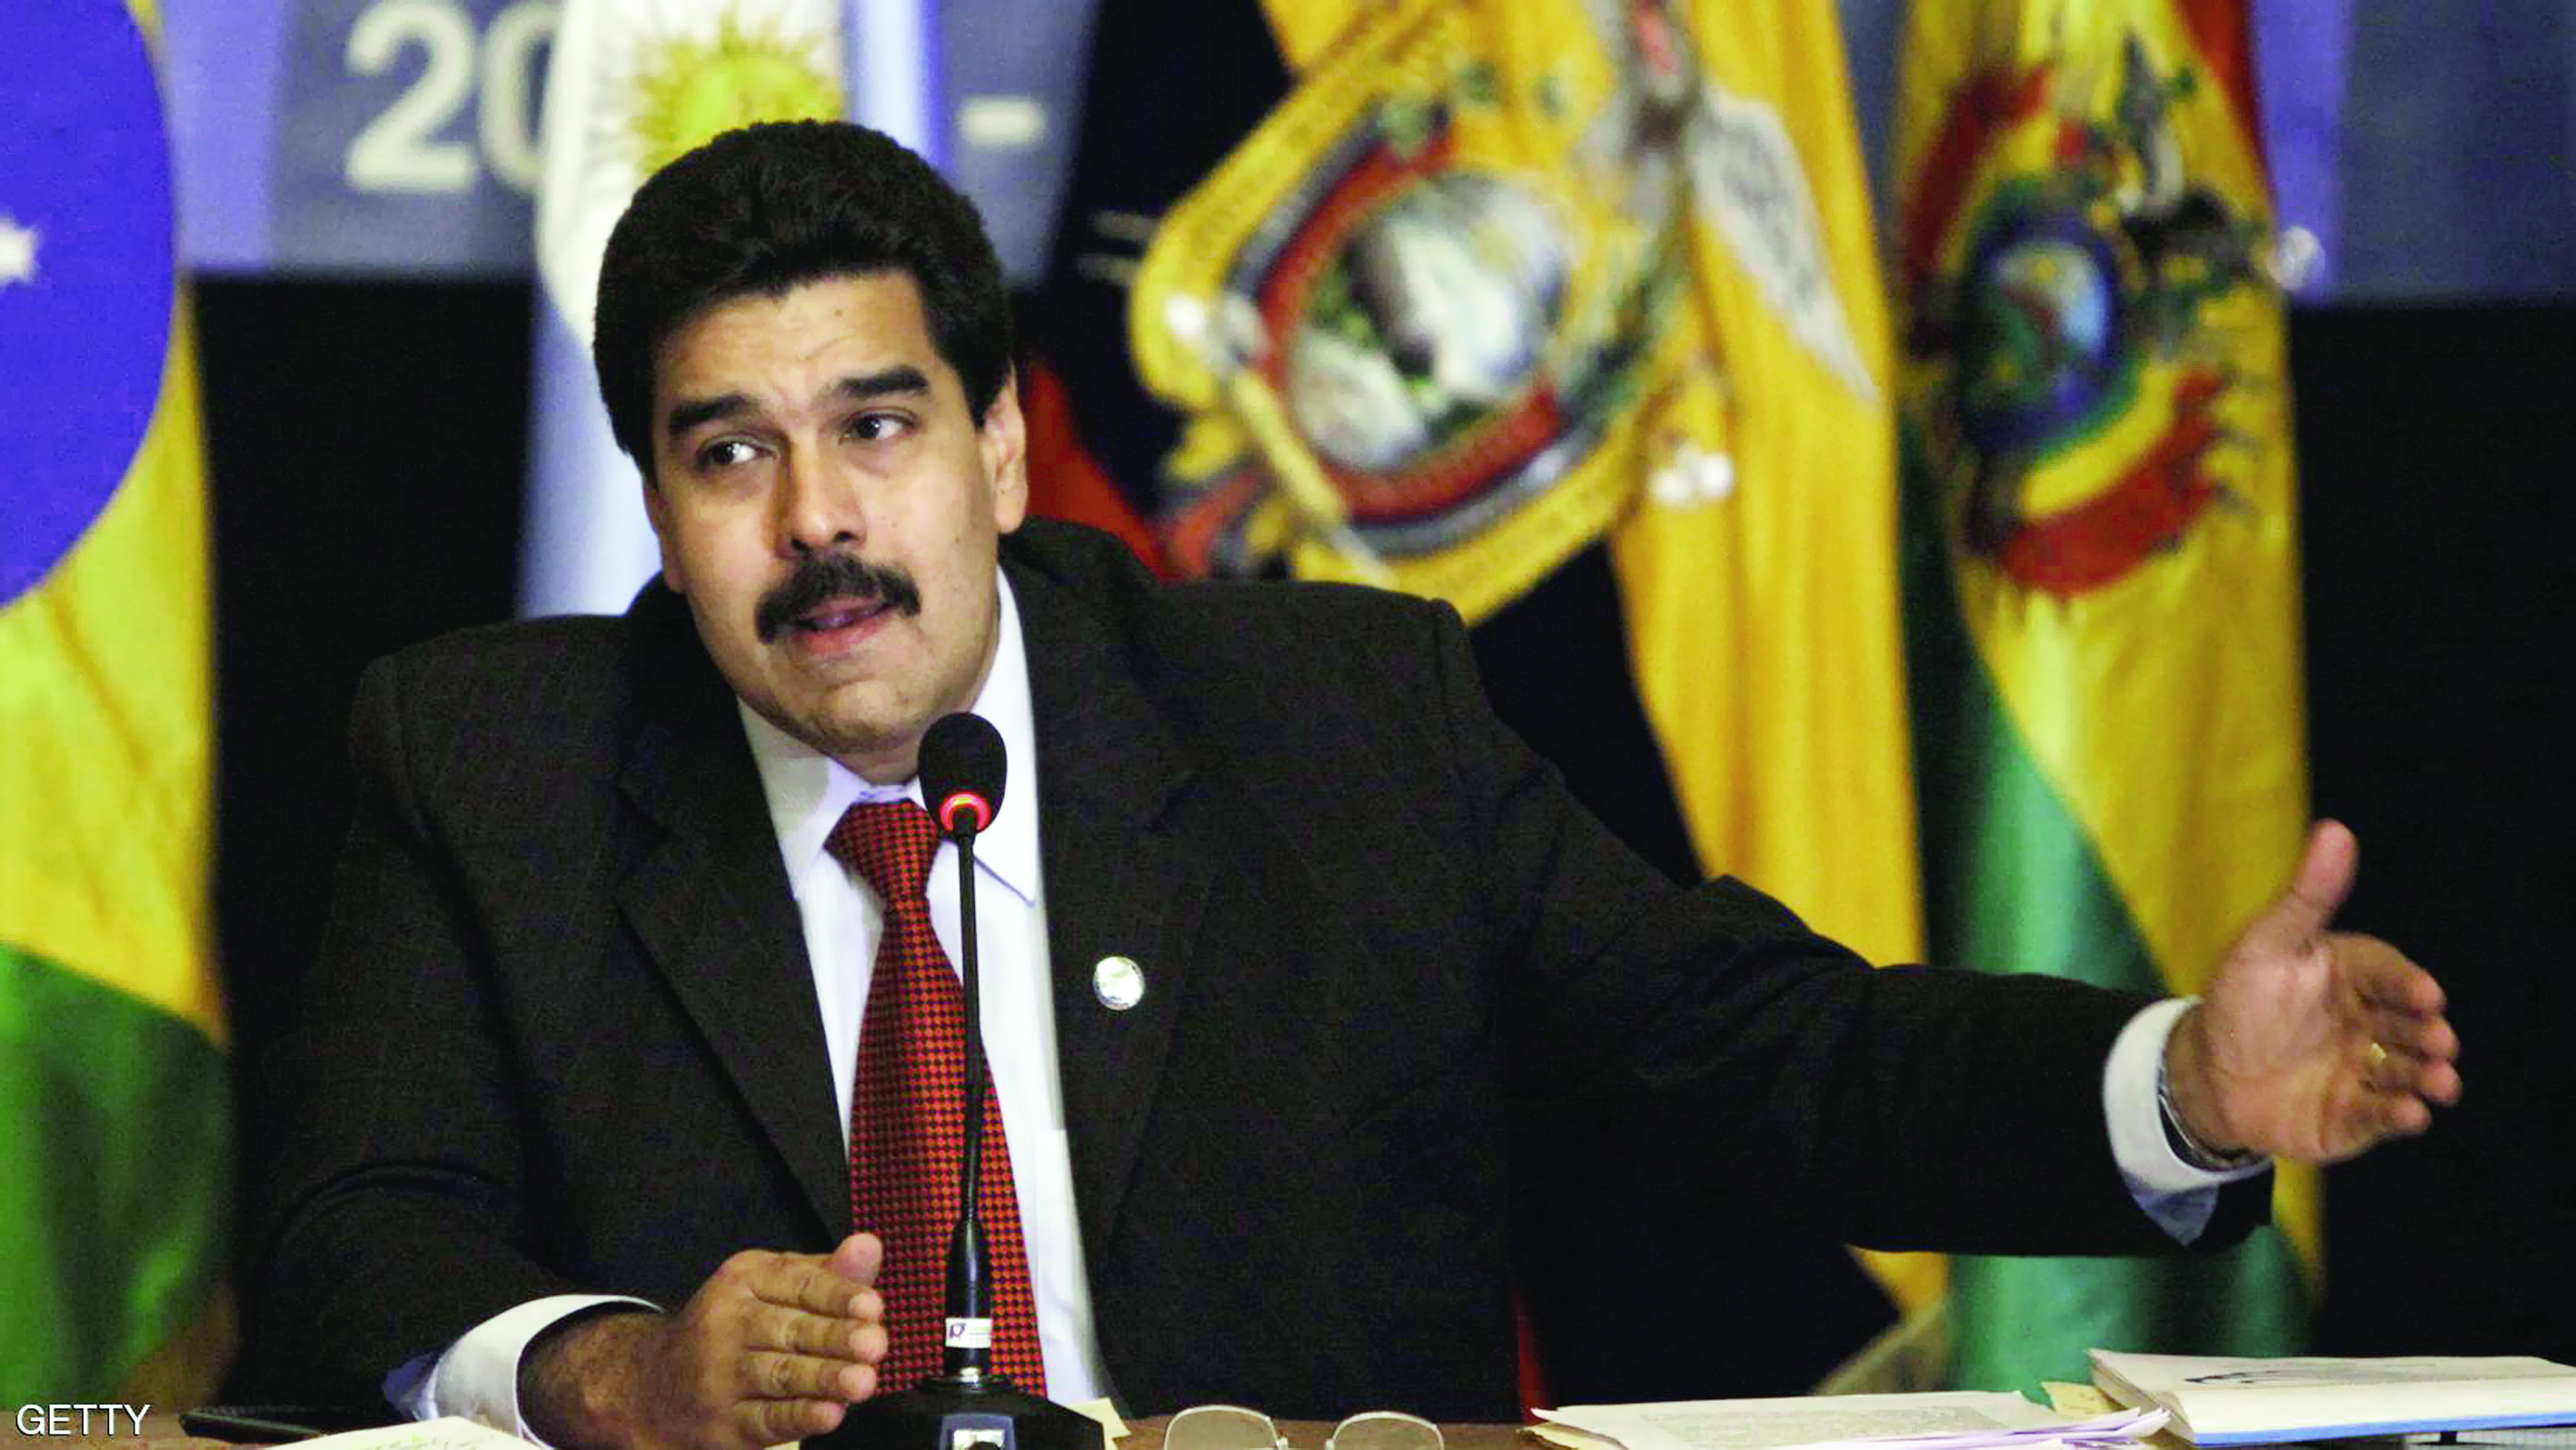 هبوط شعبية الرئيس الفنزويلي إلى أدنى مستوى